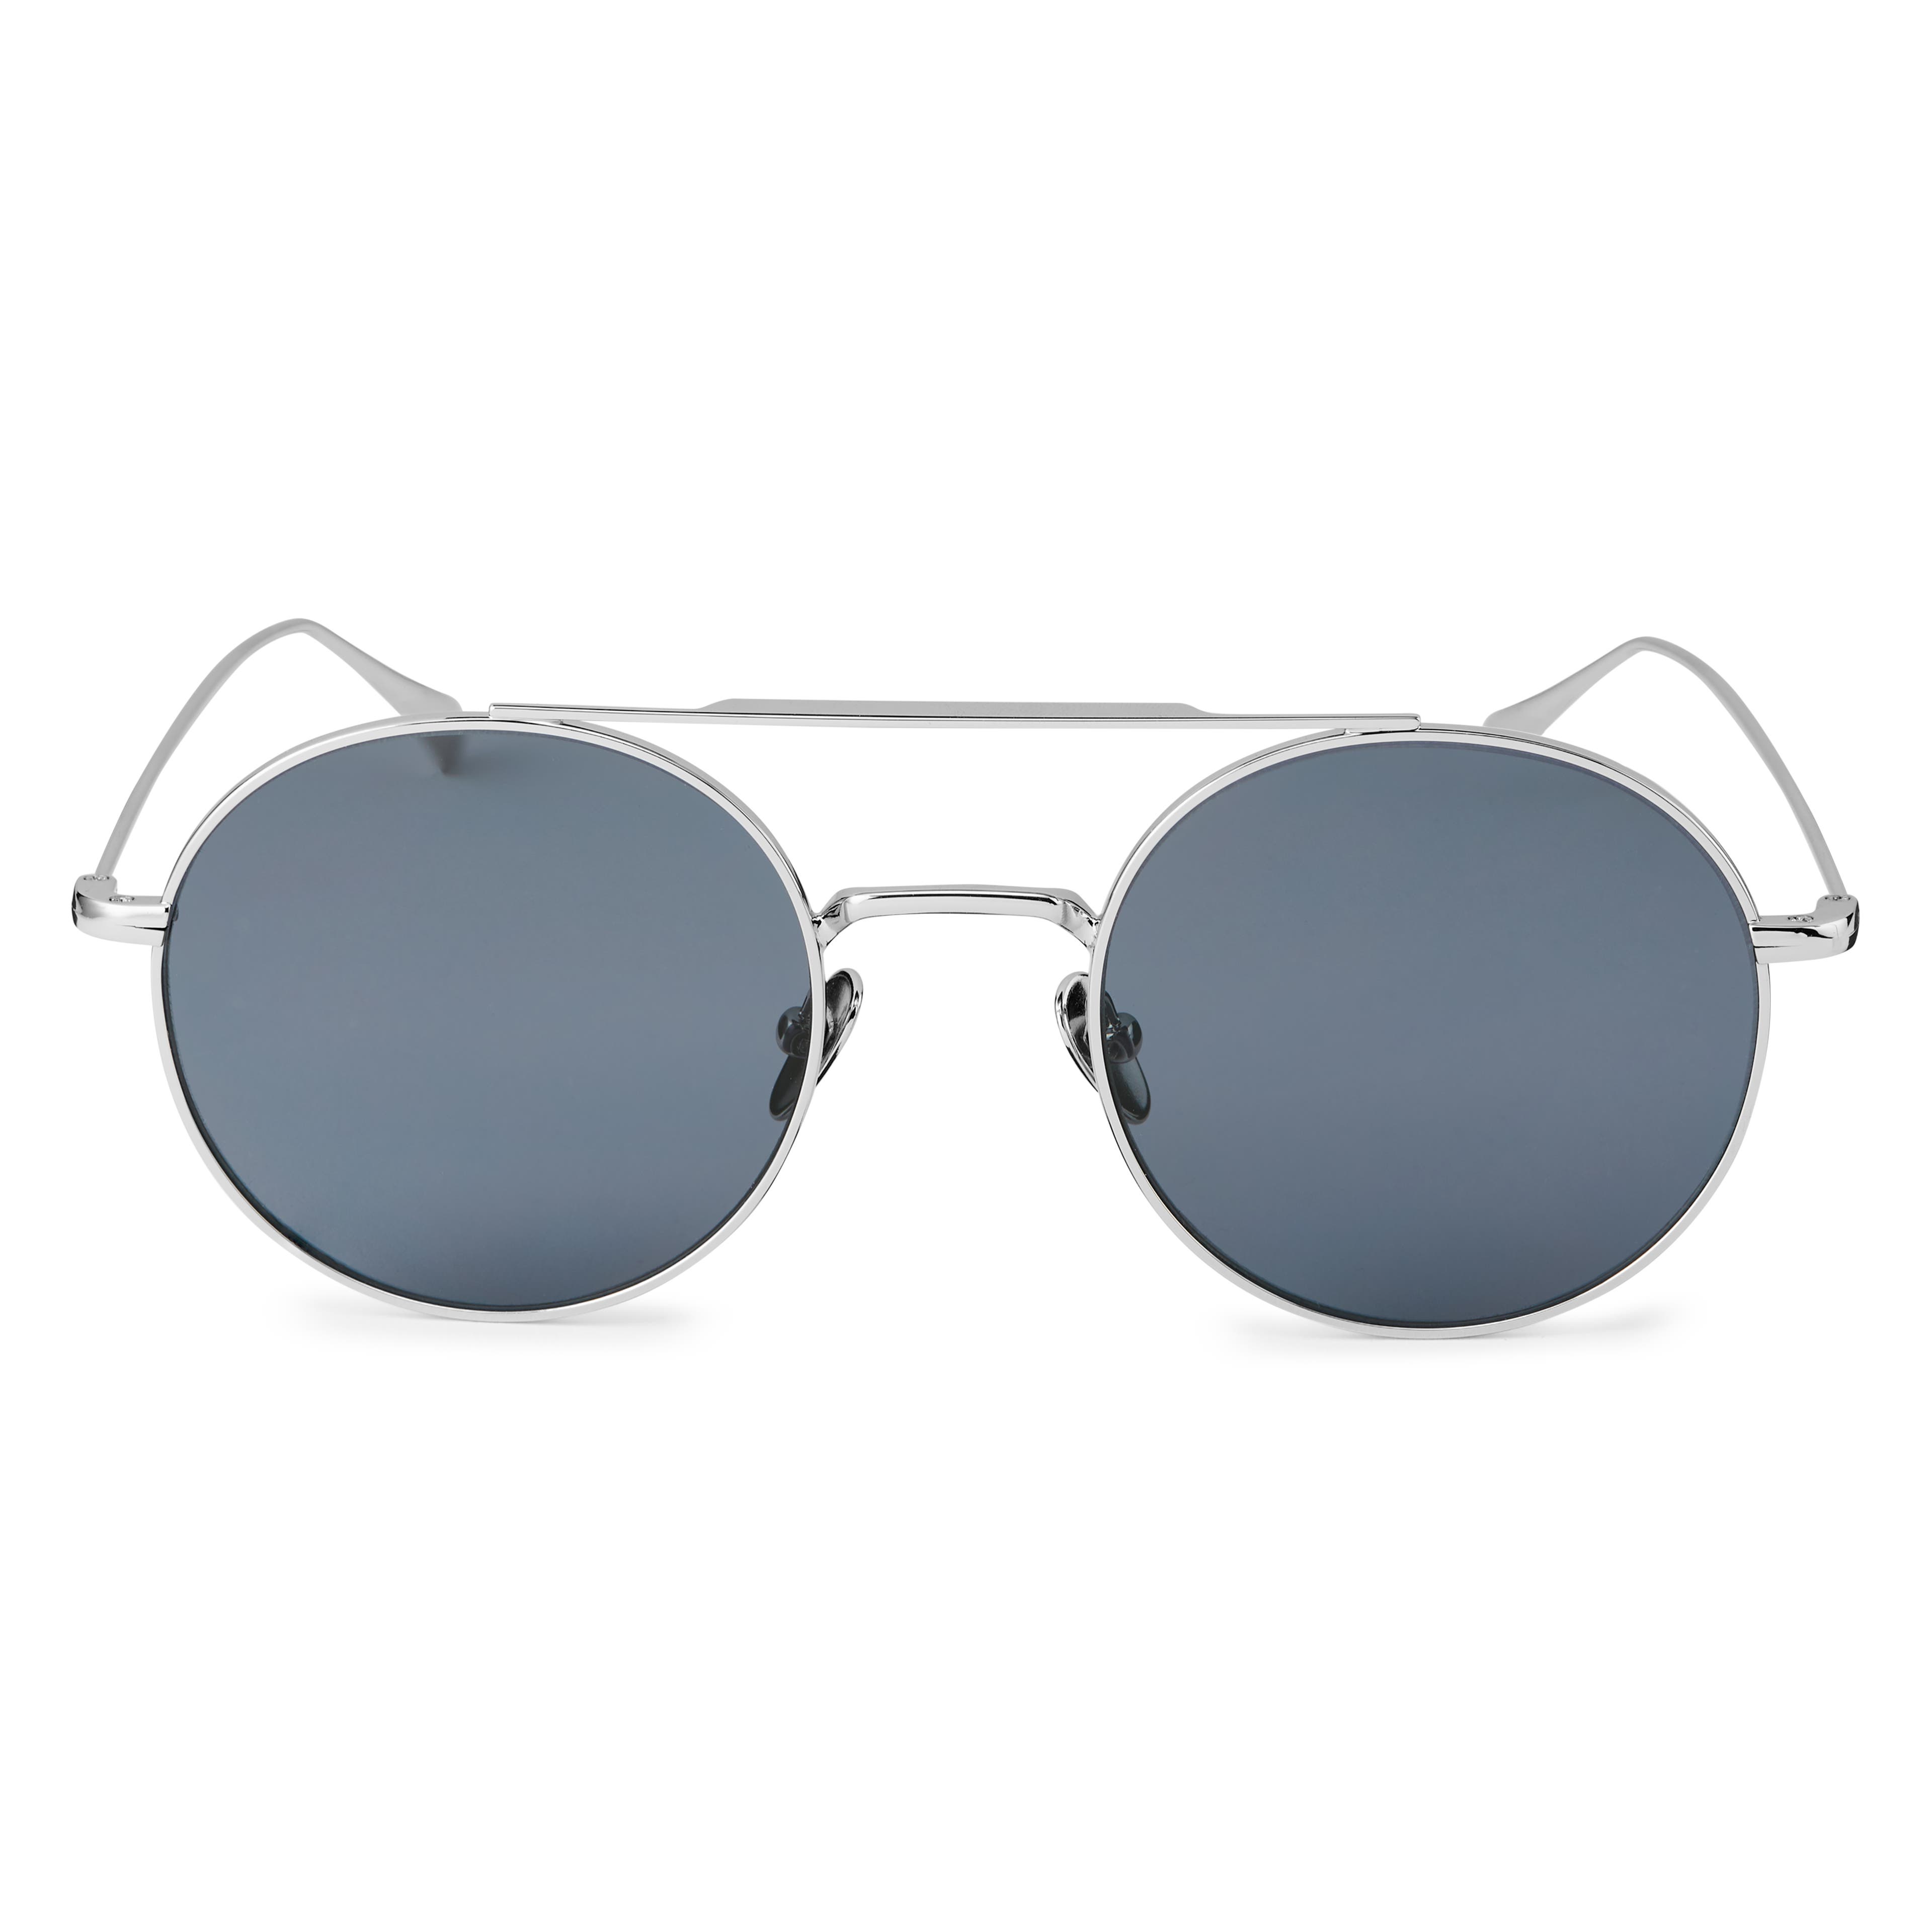 Ward Thea Silver-Tone & Grey Sunglasses